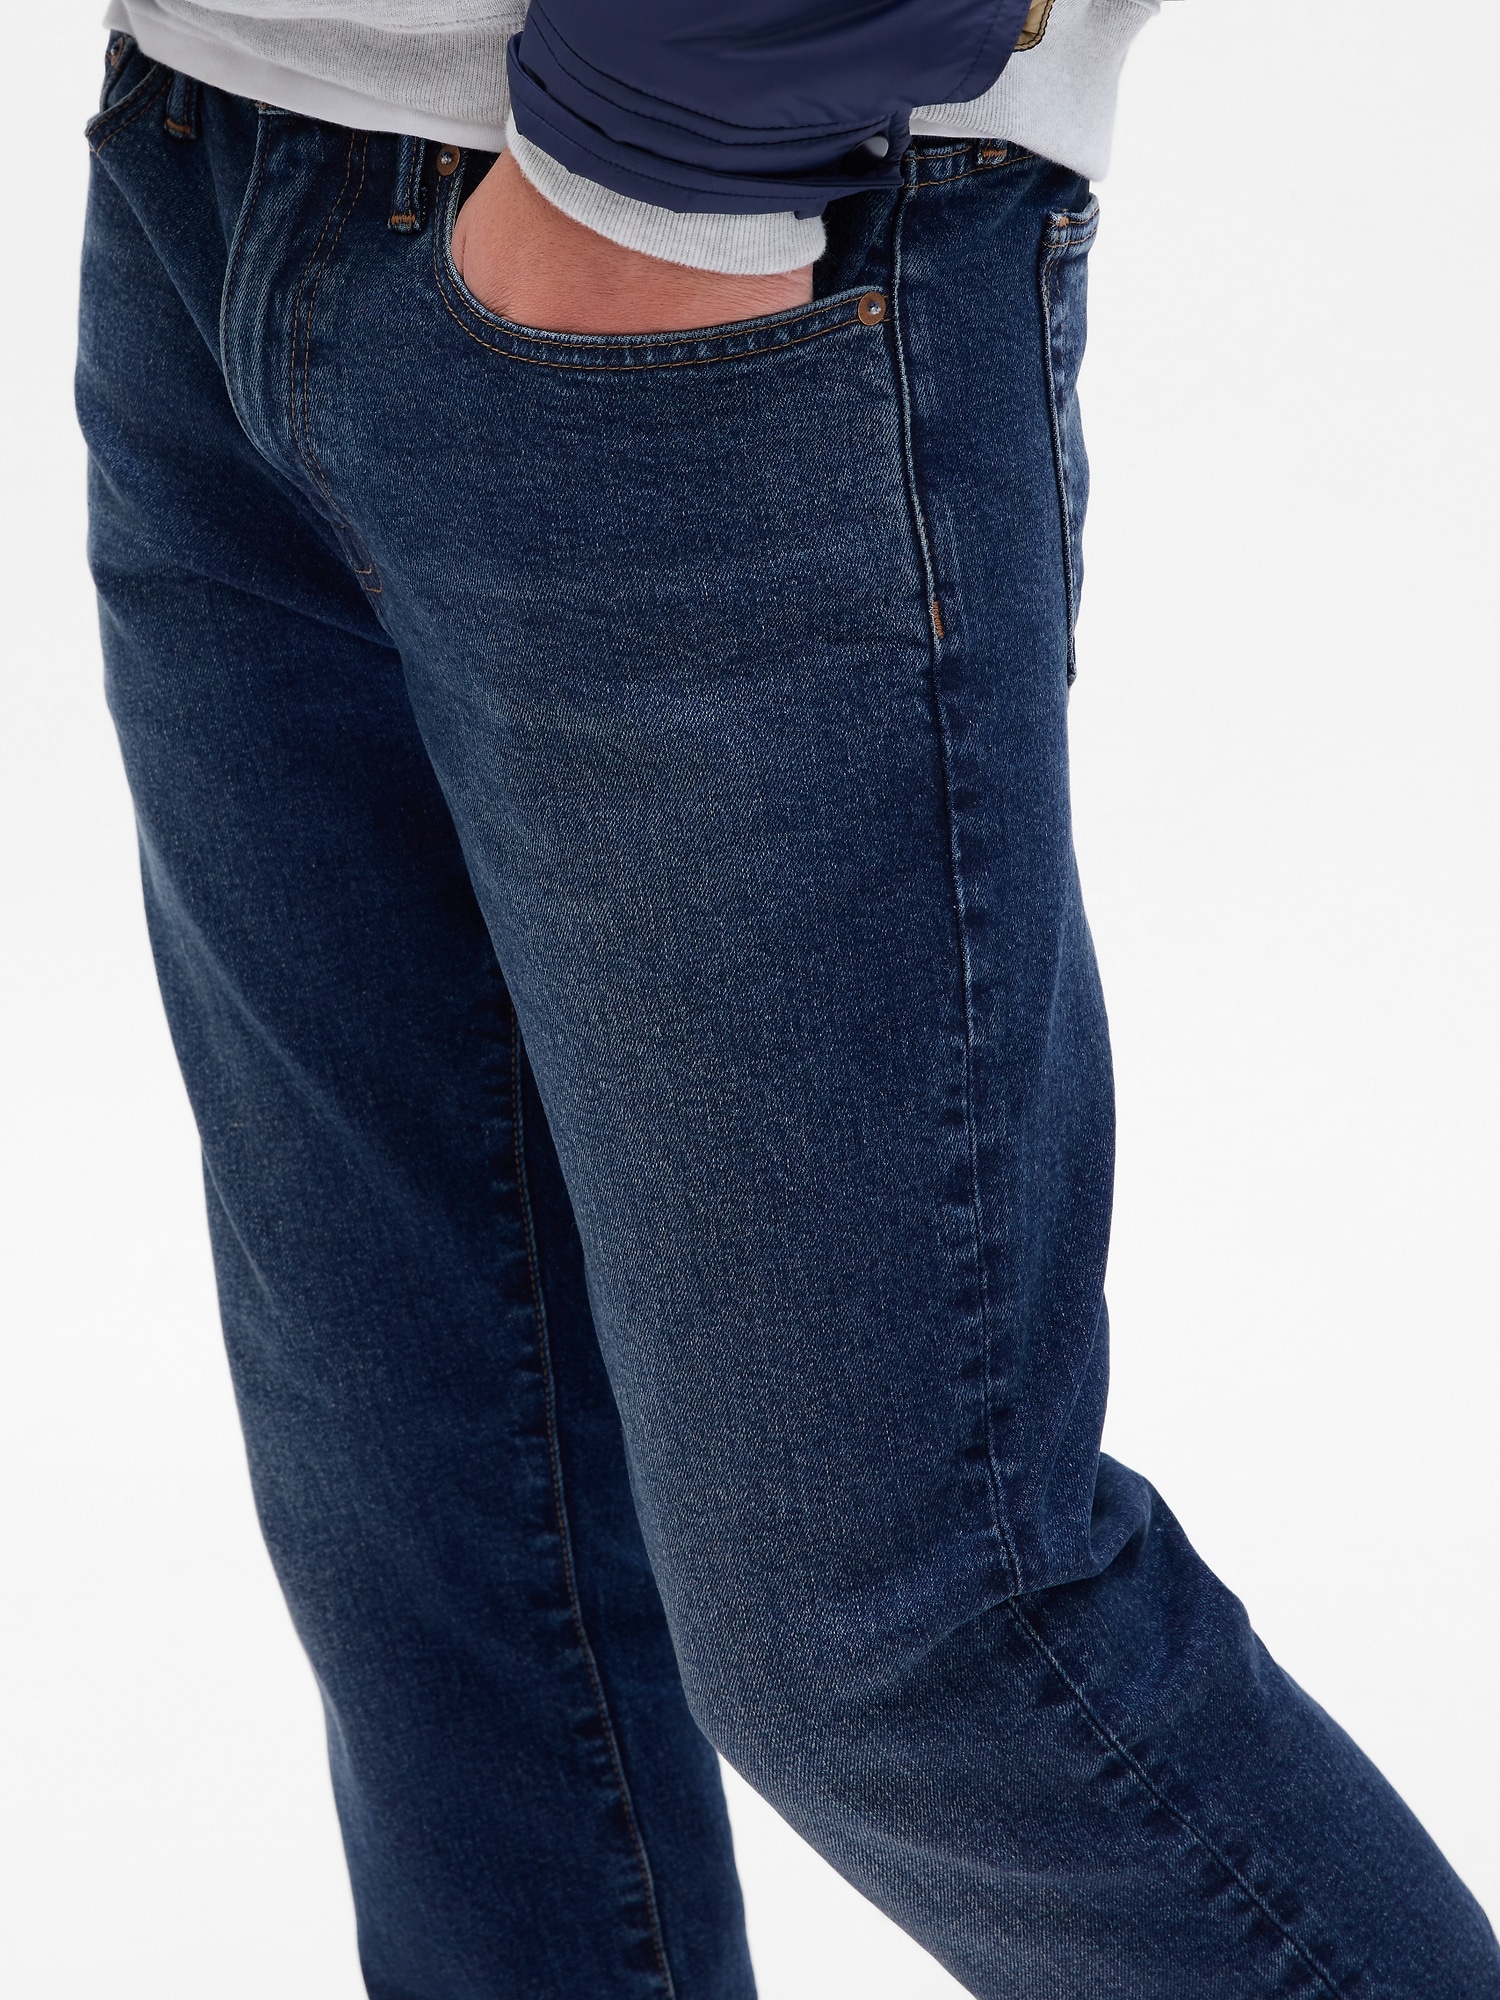 Slim Taper Jeans in GapFlex | Gap